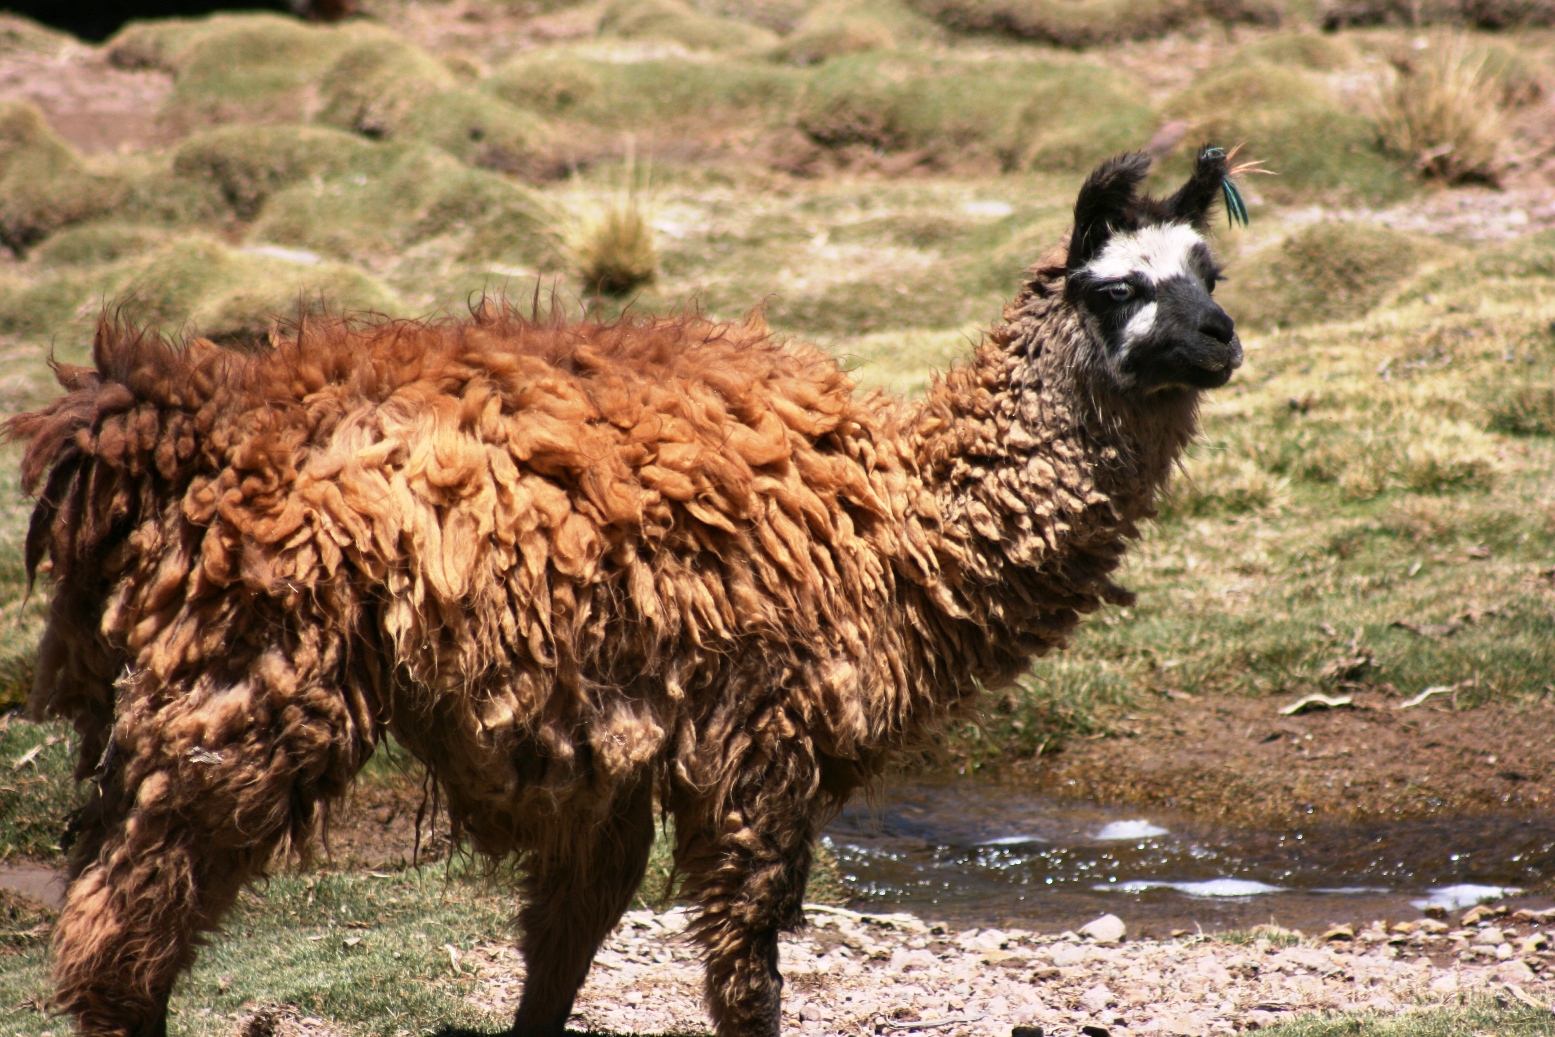 sconzani: I love llamas!